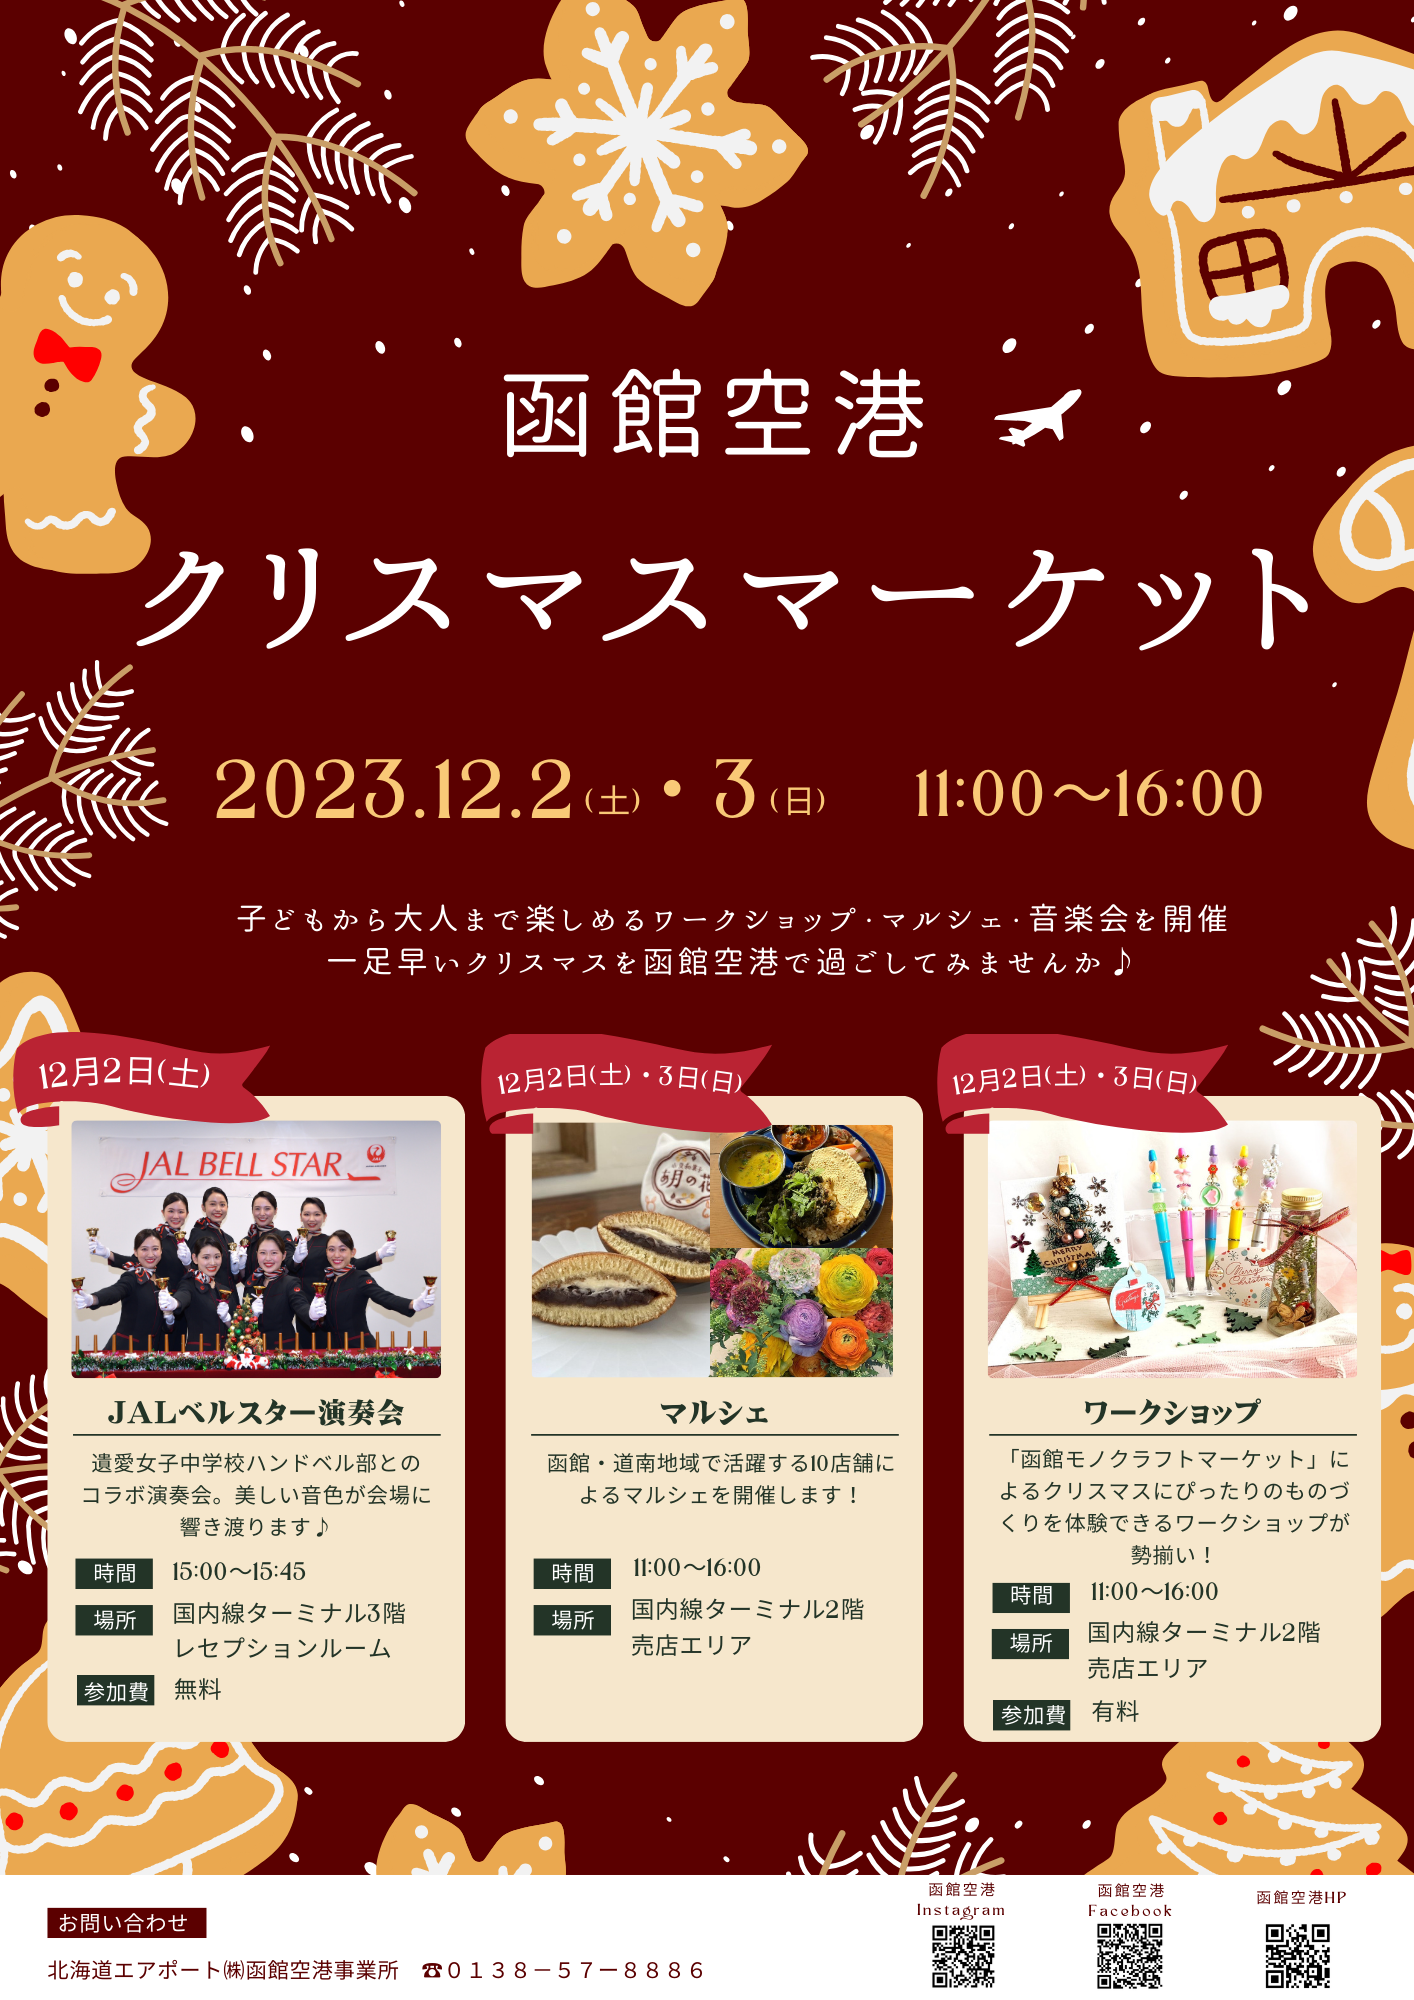 「函館空港クリスマスマーケット」の開催について（終了いたしました）